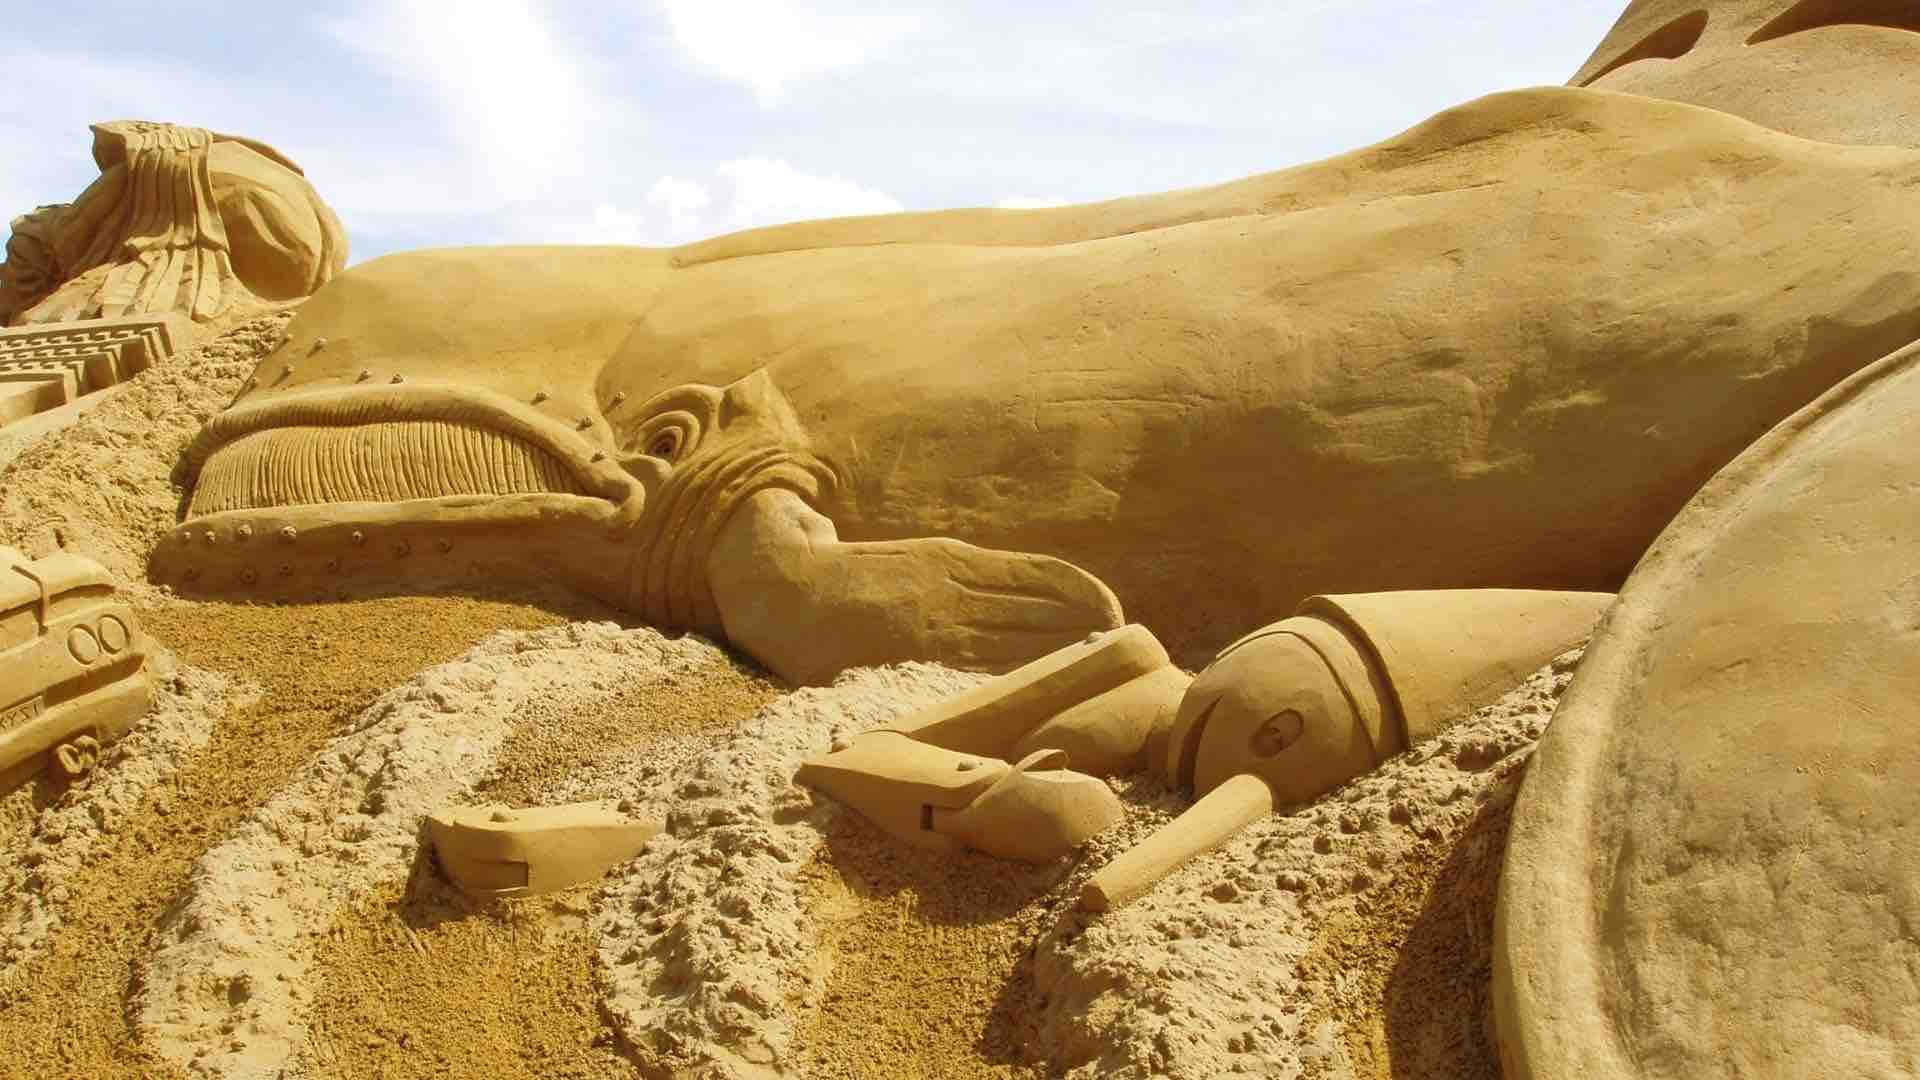 A Sand Sculpture Of A Lion And A Giraffe